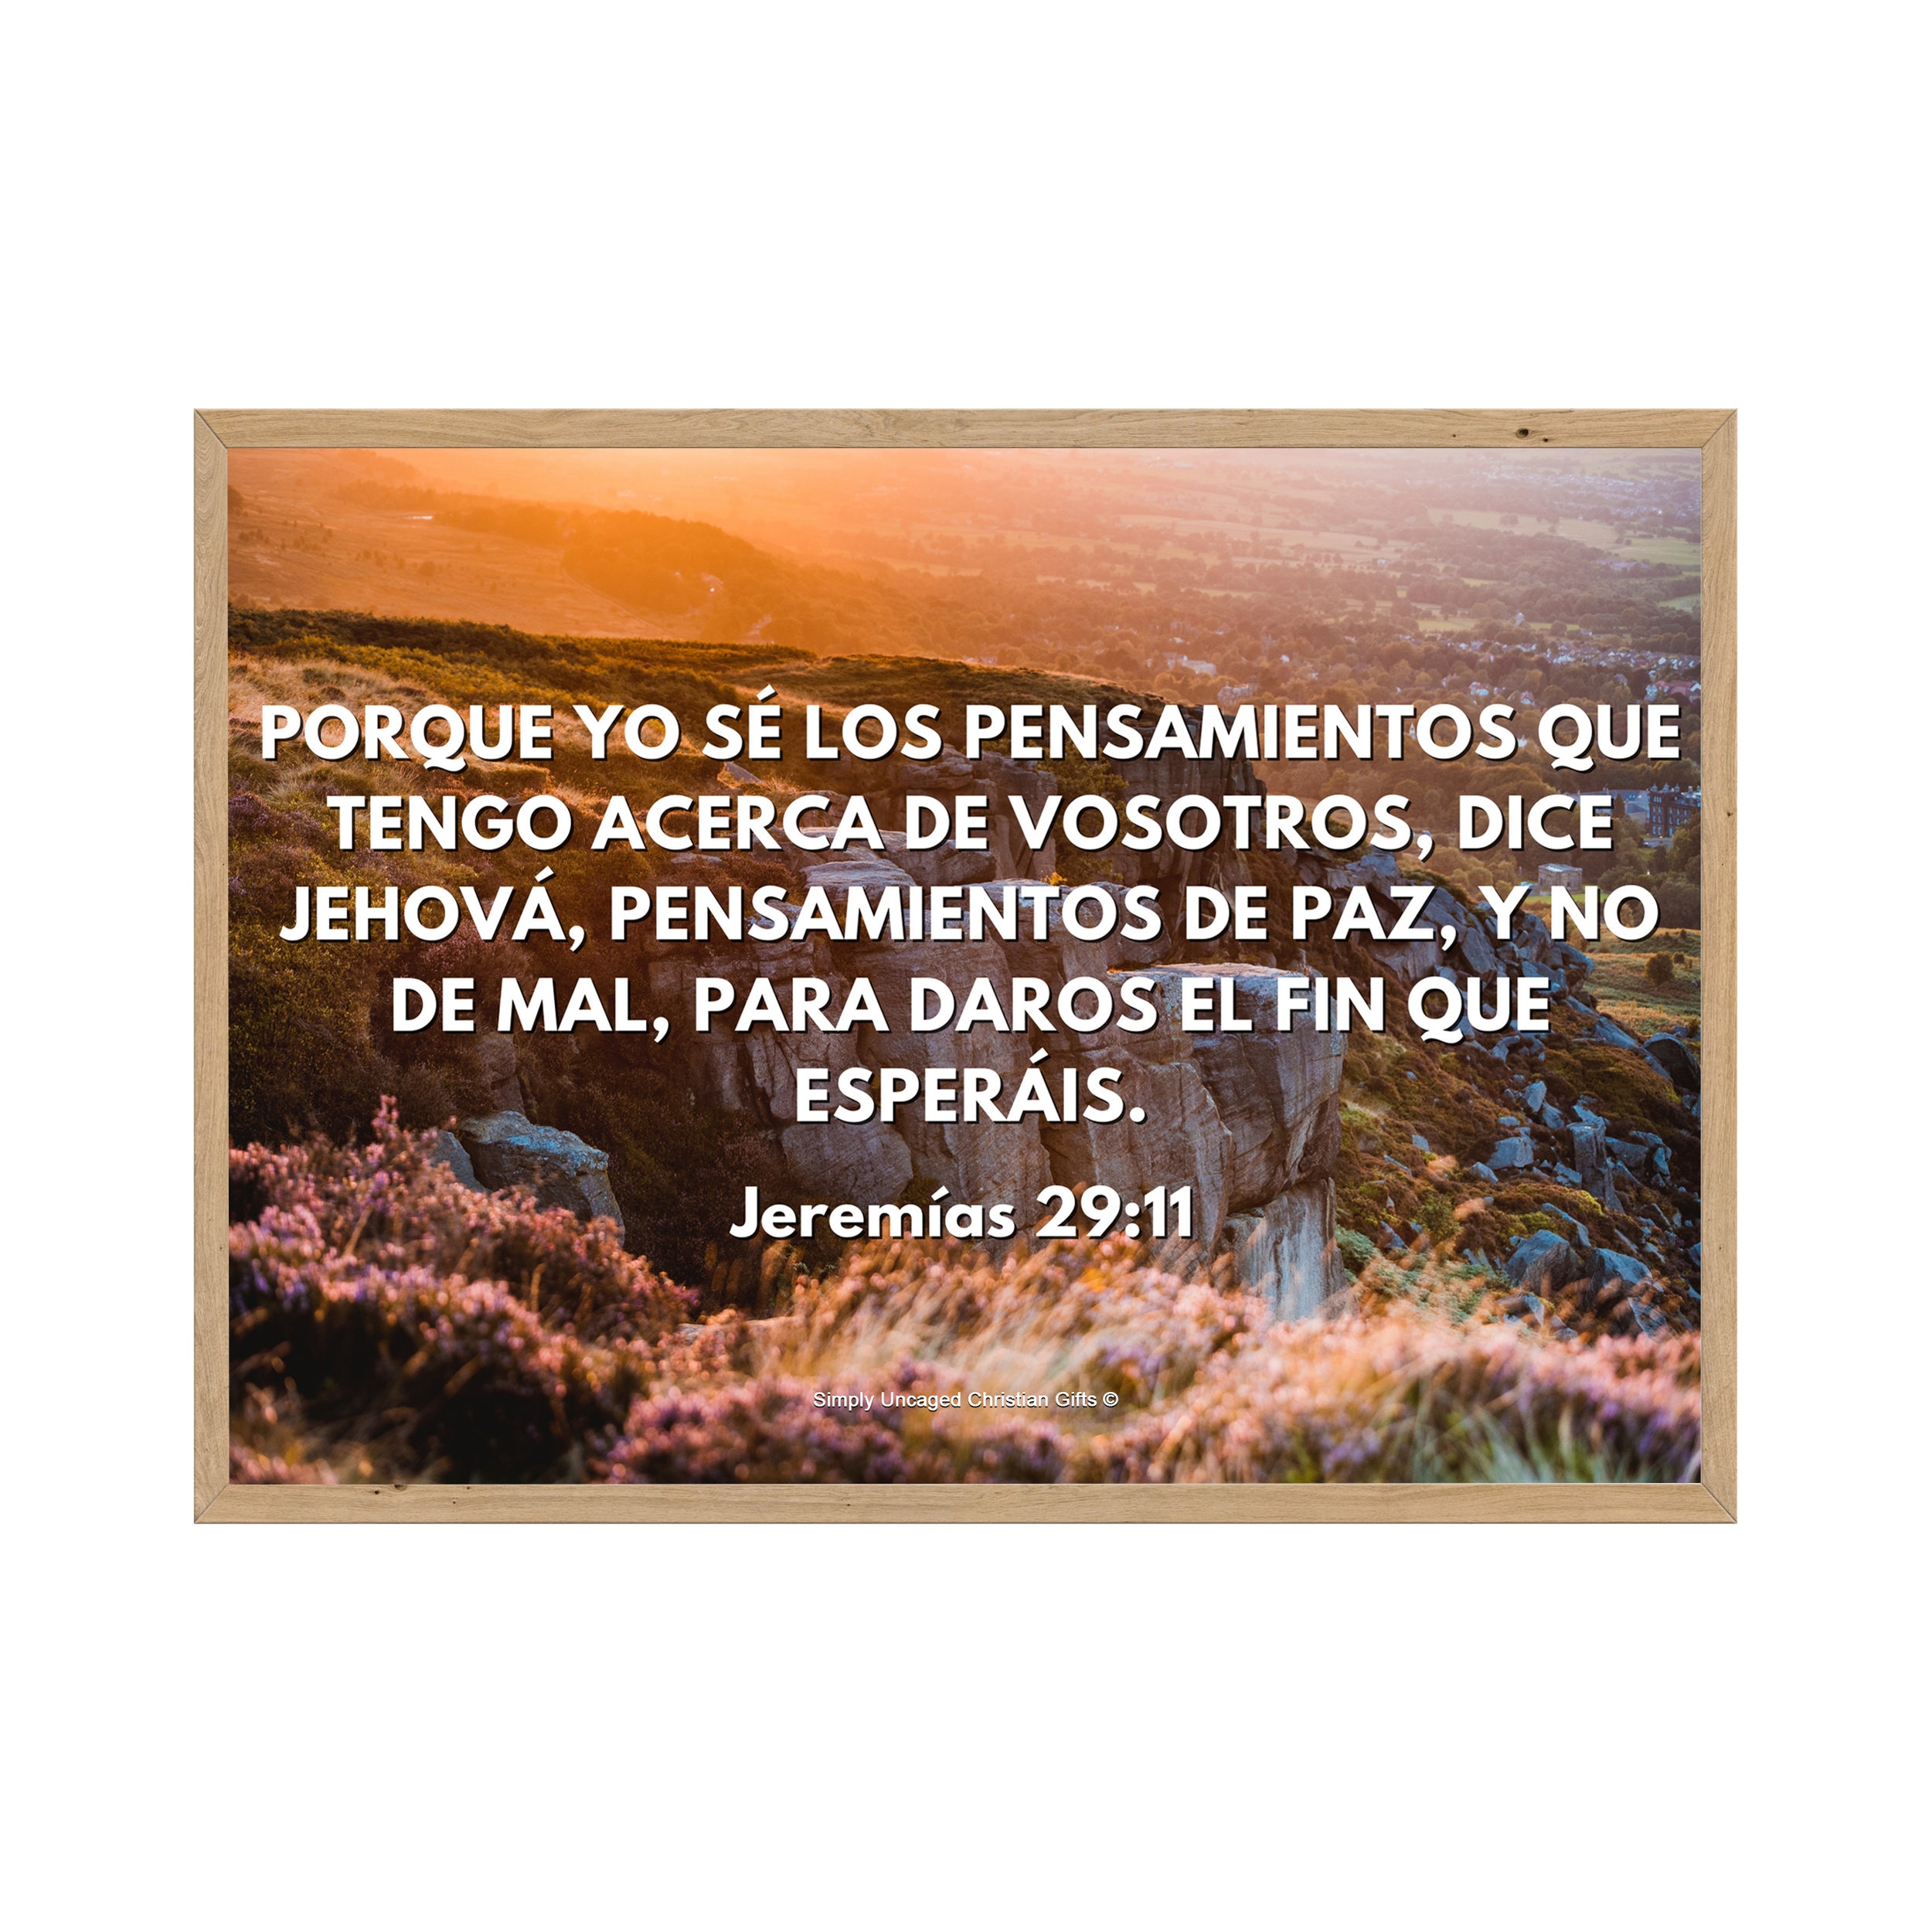 jeremias 29:11